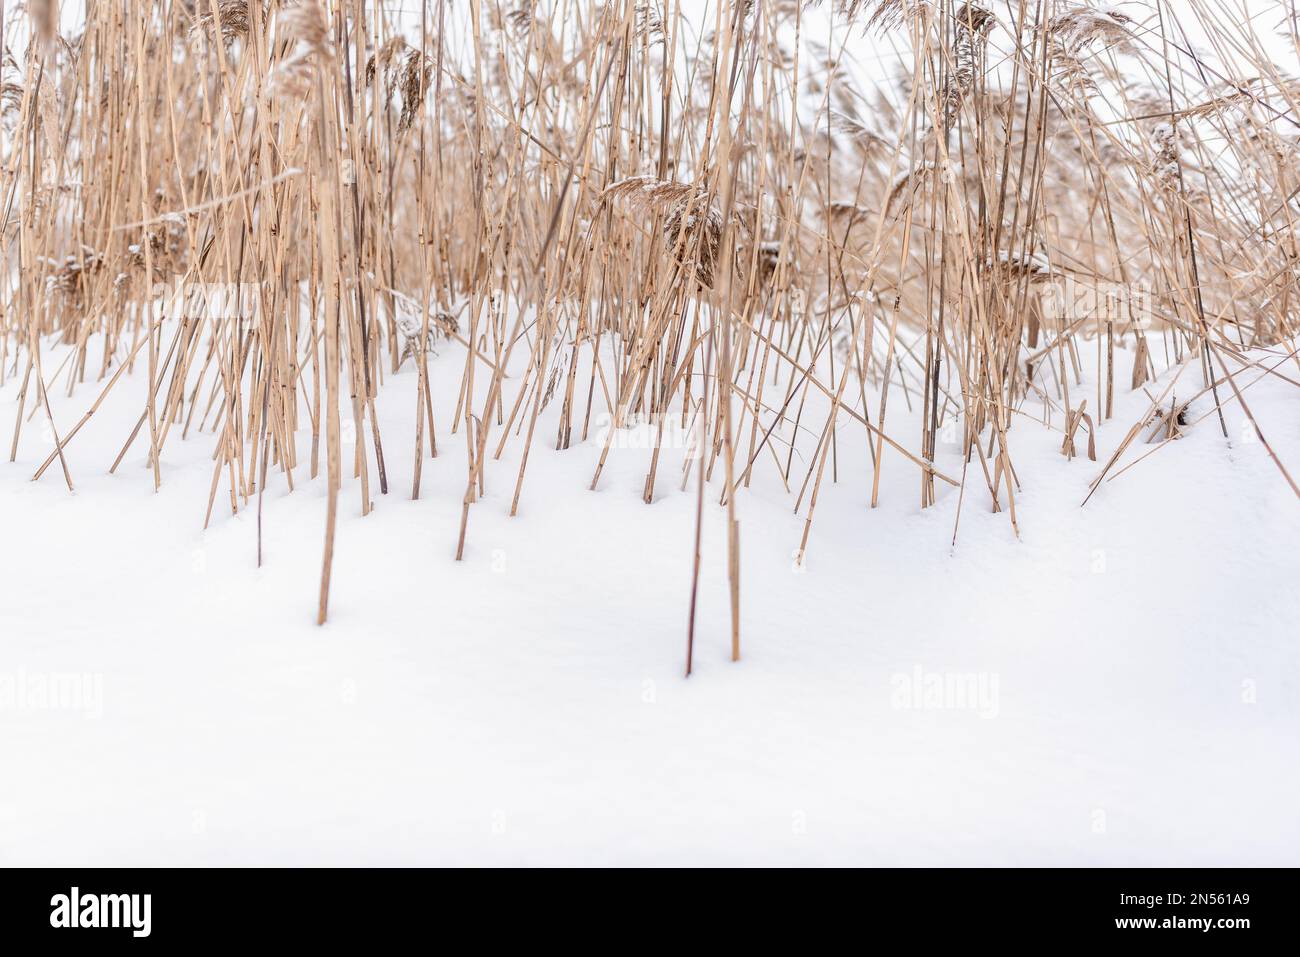 Gambi asciutti di colore giallo brillante e dense infiorescenze di piccole canne d'erba crescono dalla neve bianca in inverno sul lago al freddo. Foto Stock